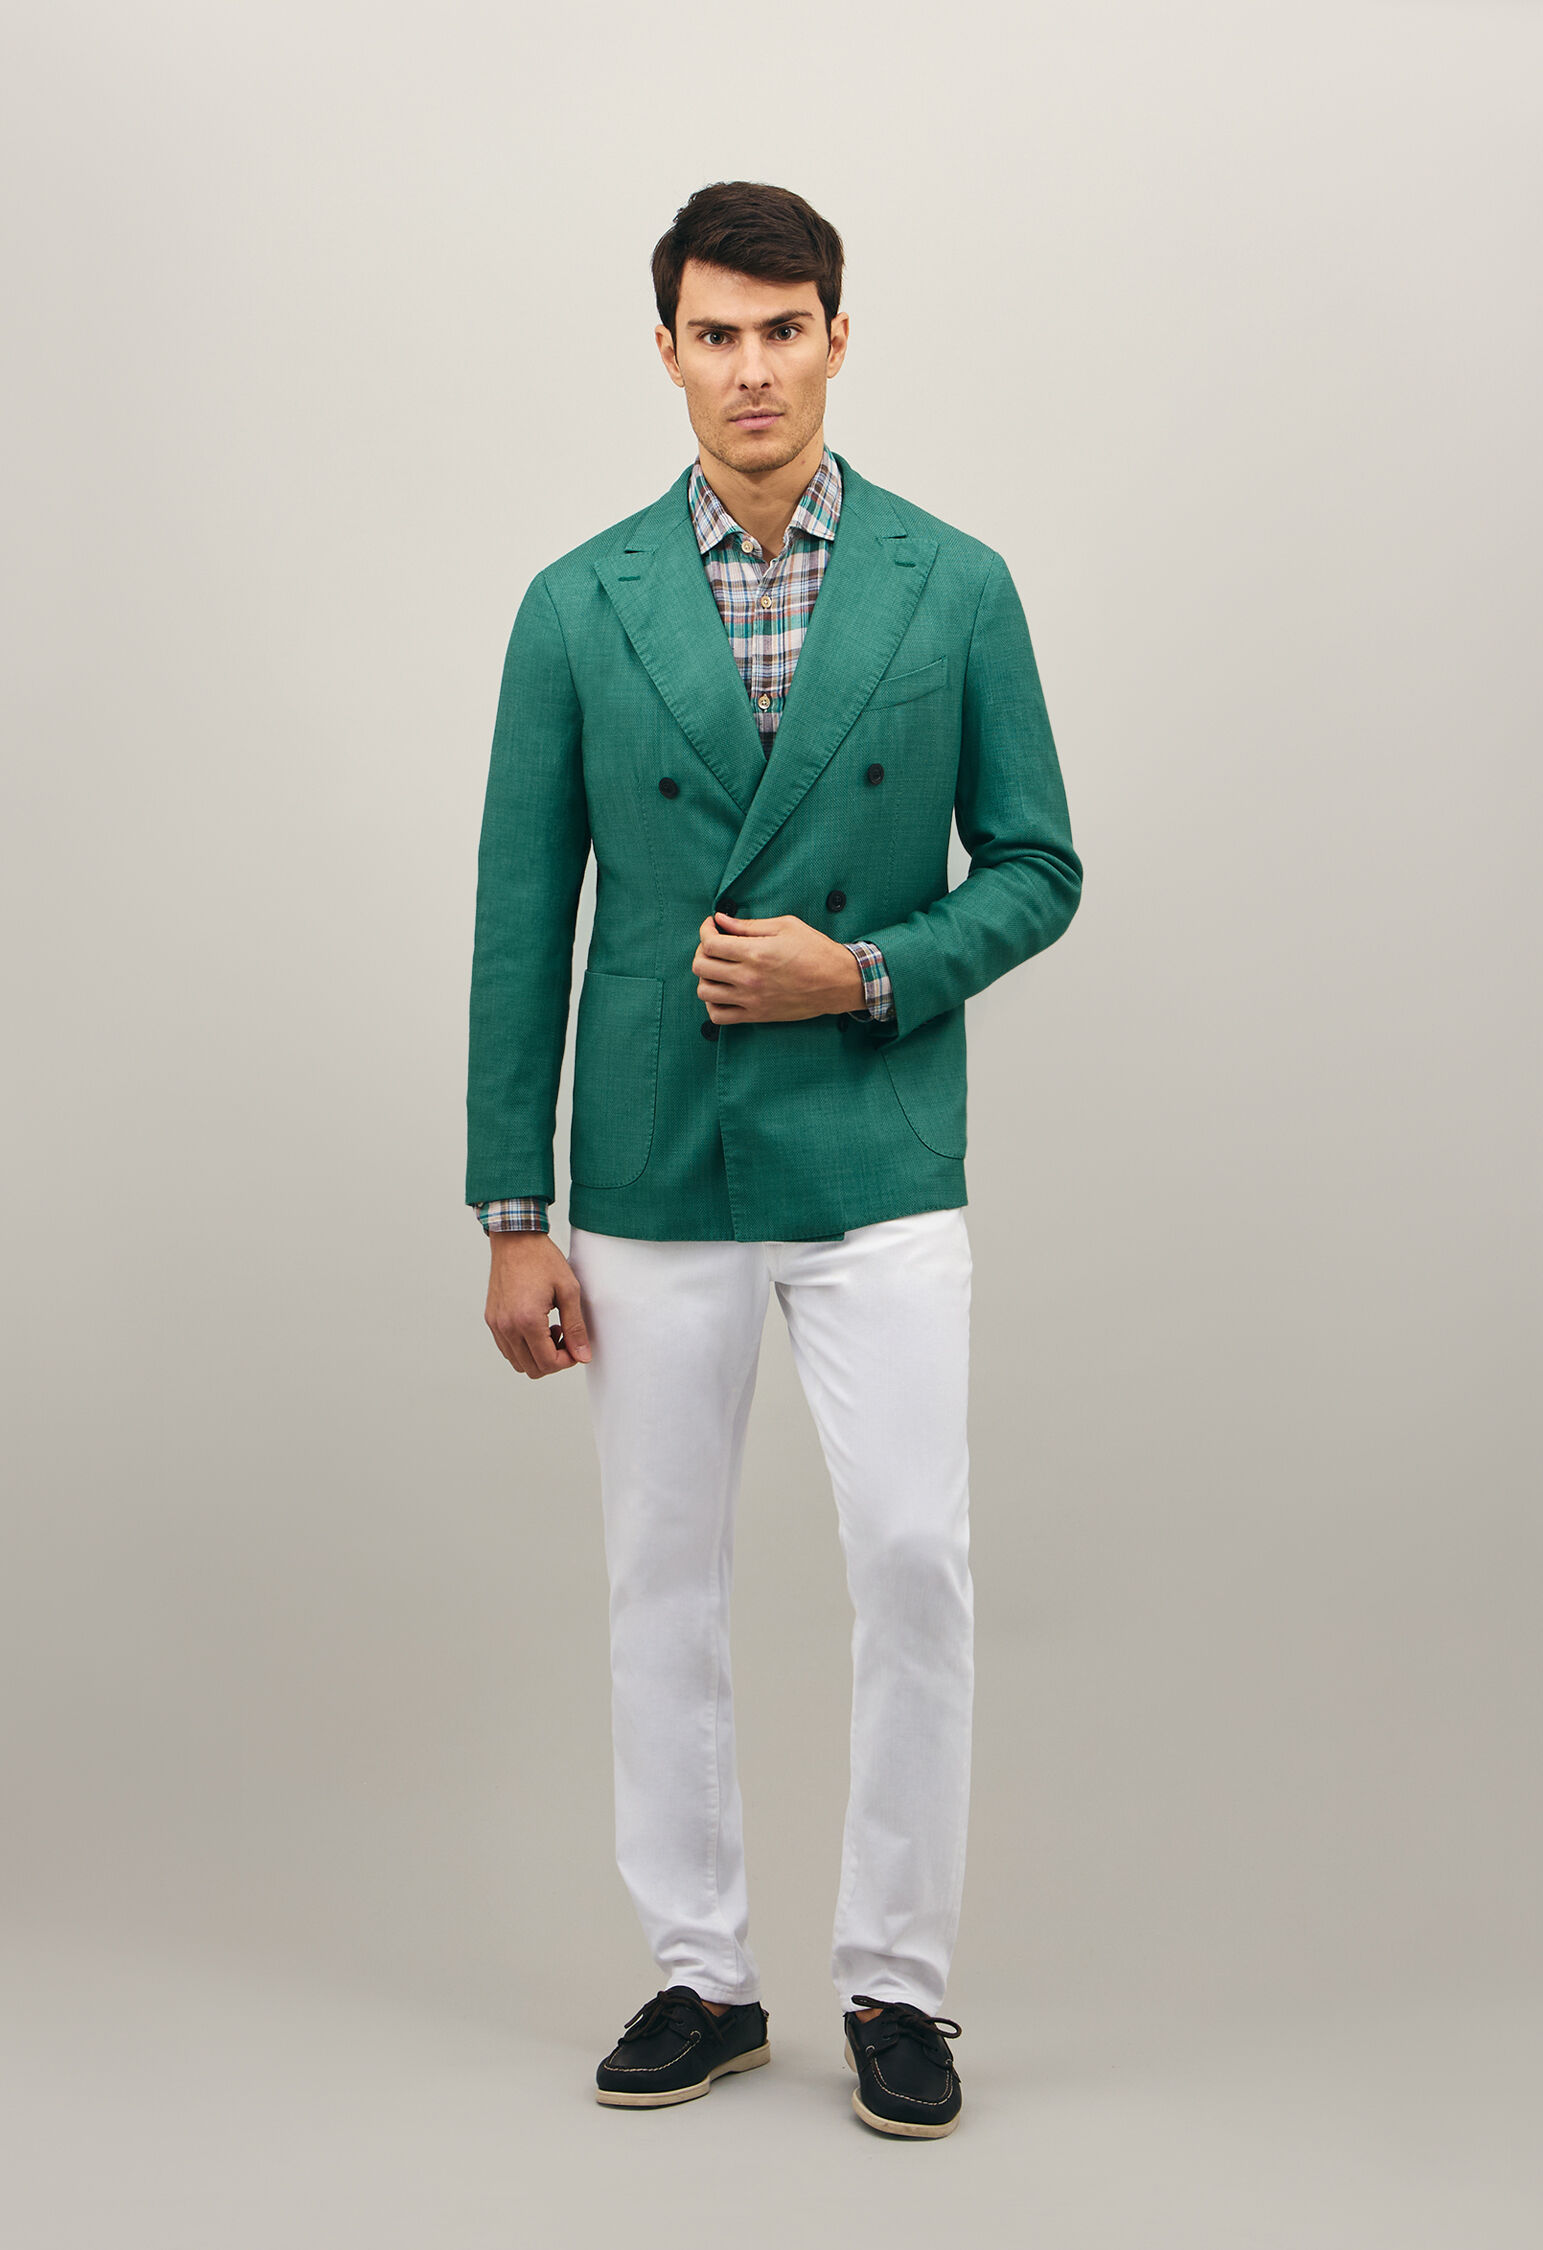 K-Jacket Men's - Smart Casual Jackets | Boglioli®